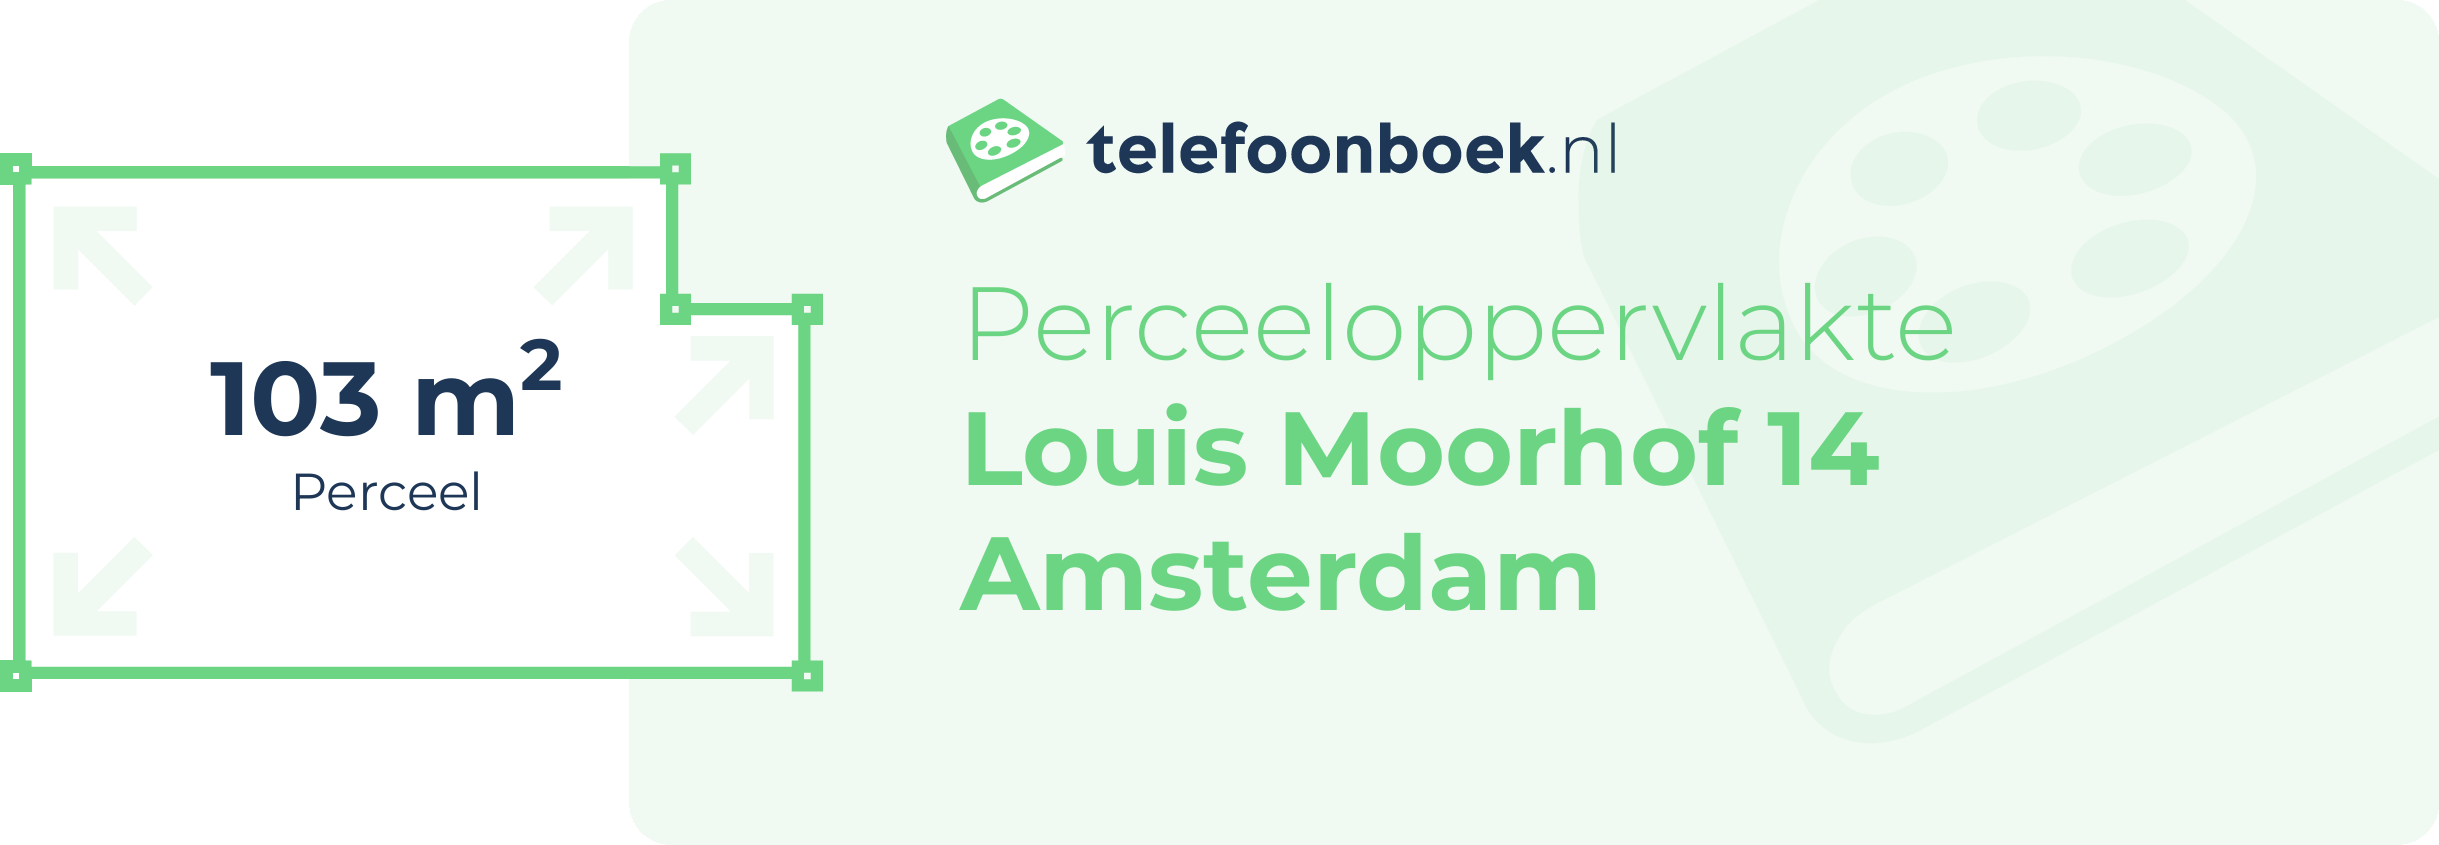 Perceeloppervlakte Louis Moorhof 14 Amsterdam